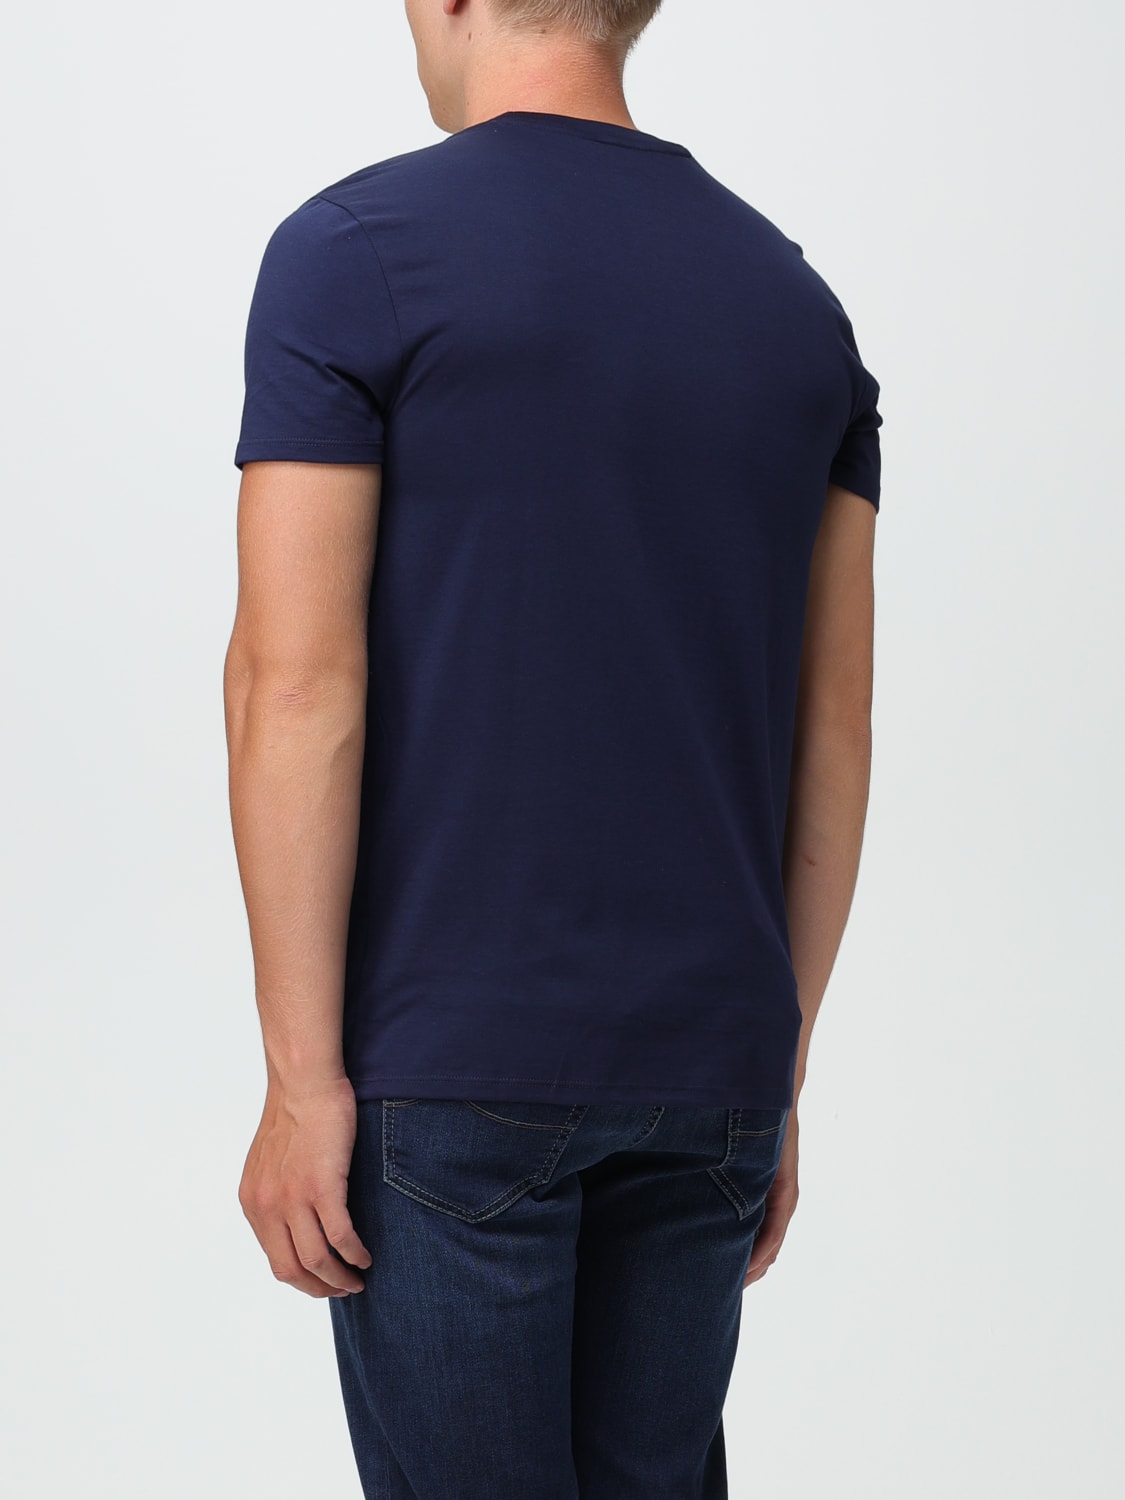 LACOSTE: Camiseta para hombre, Azul Oscuro